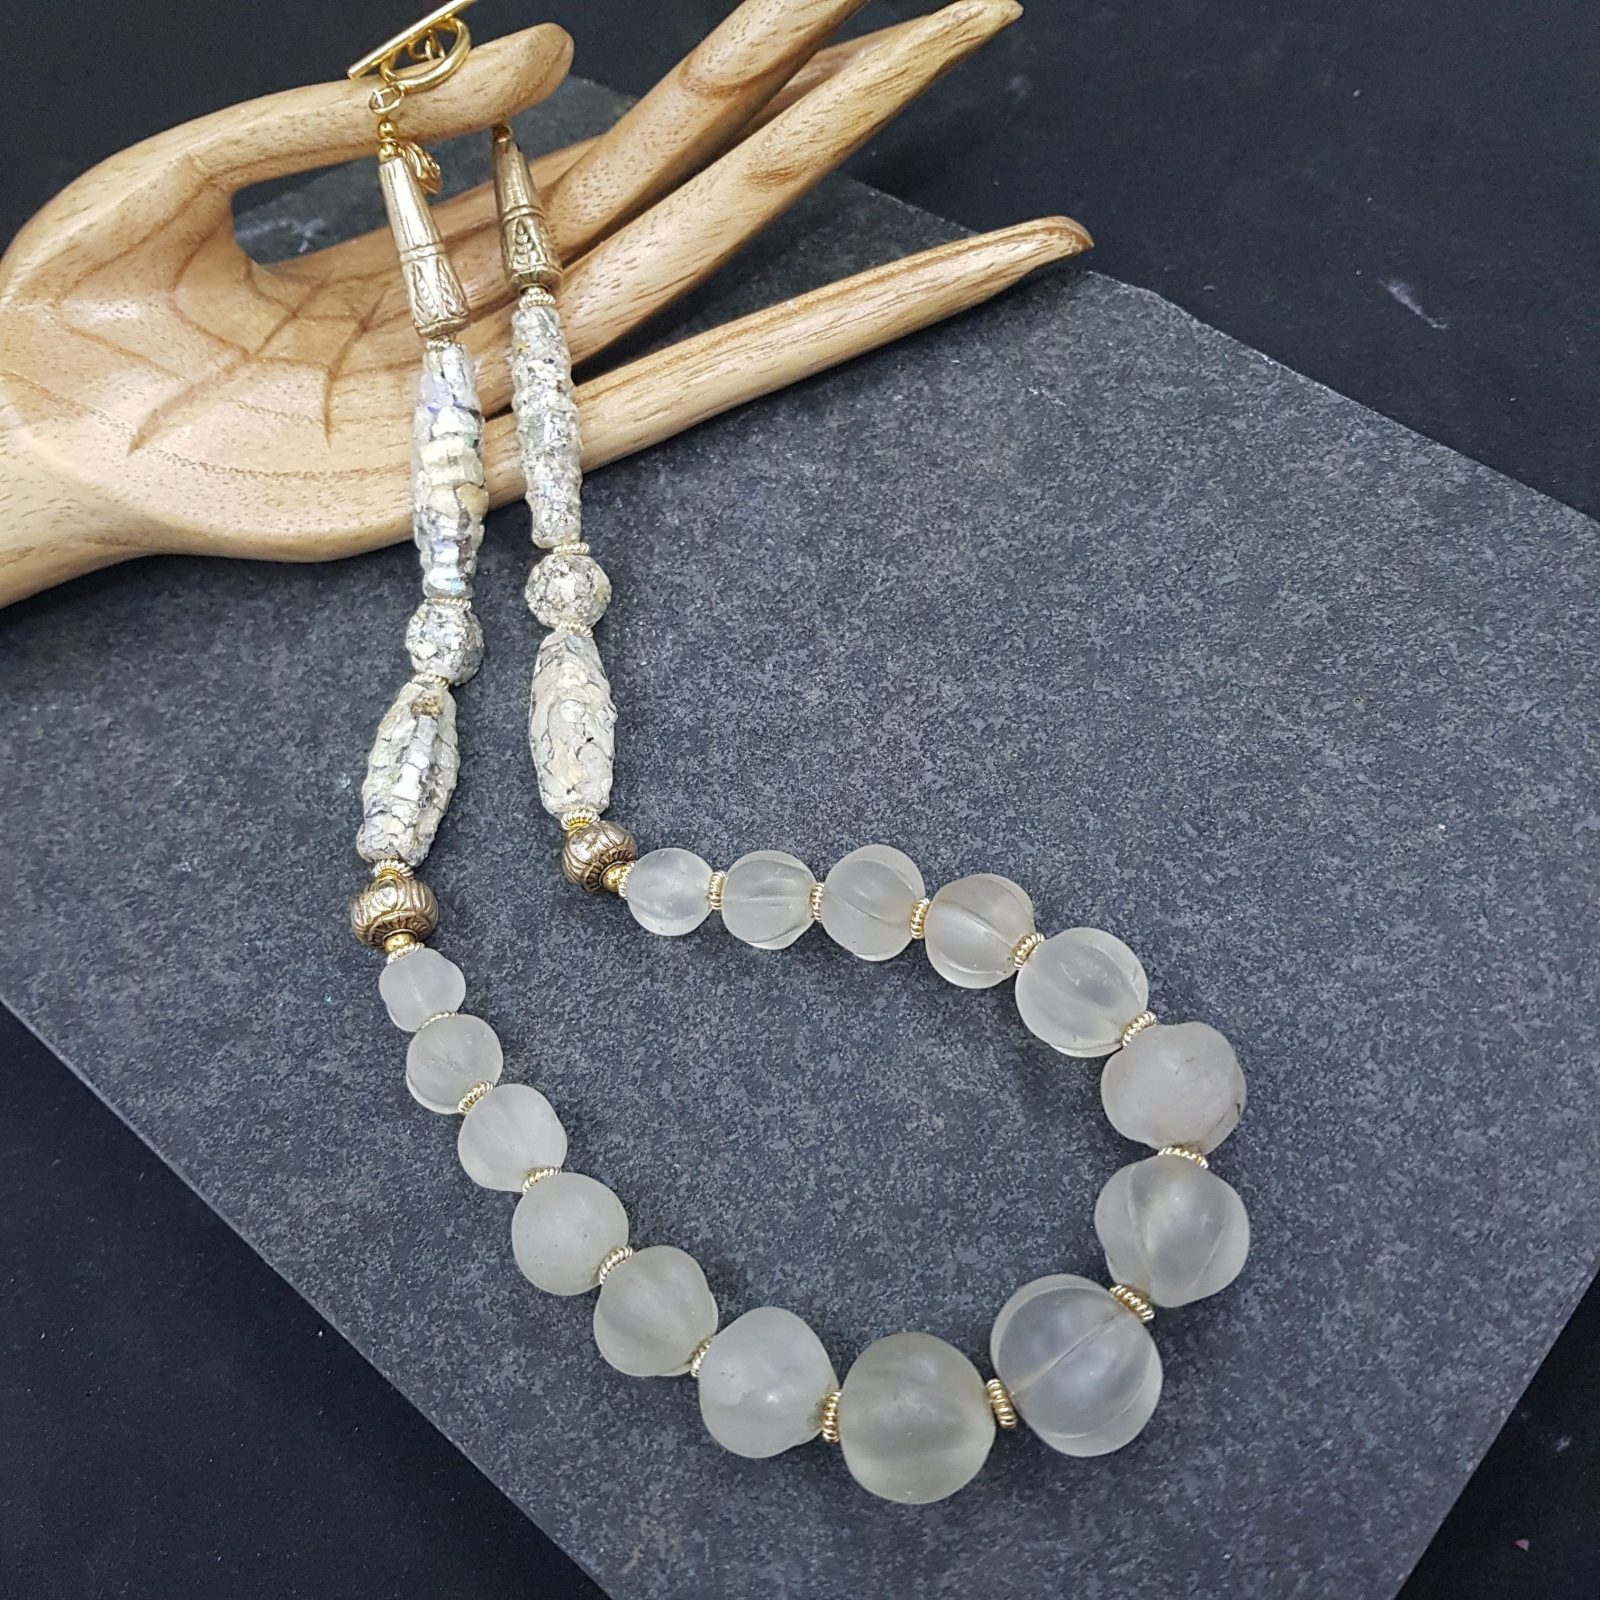 Ancient Himalayan Rock Crystal Roman Glass Bead Necklace